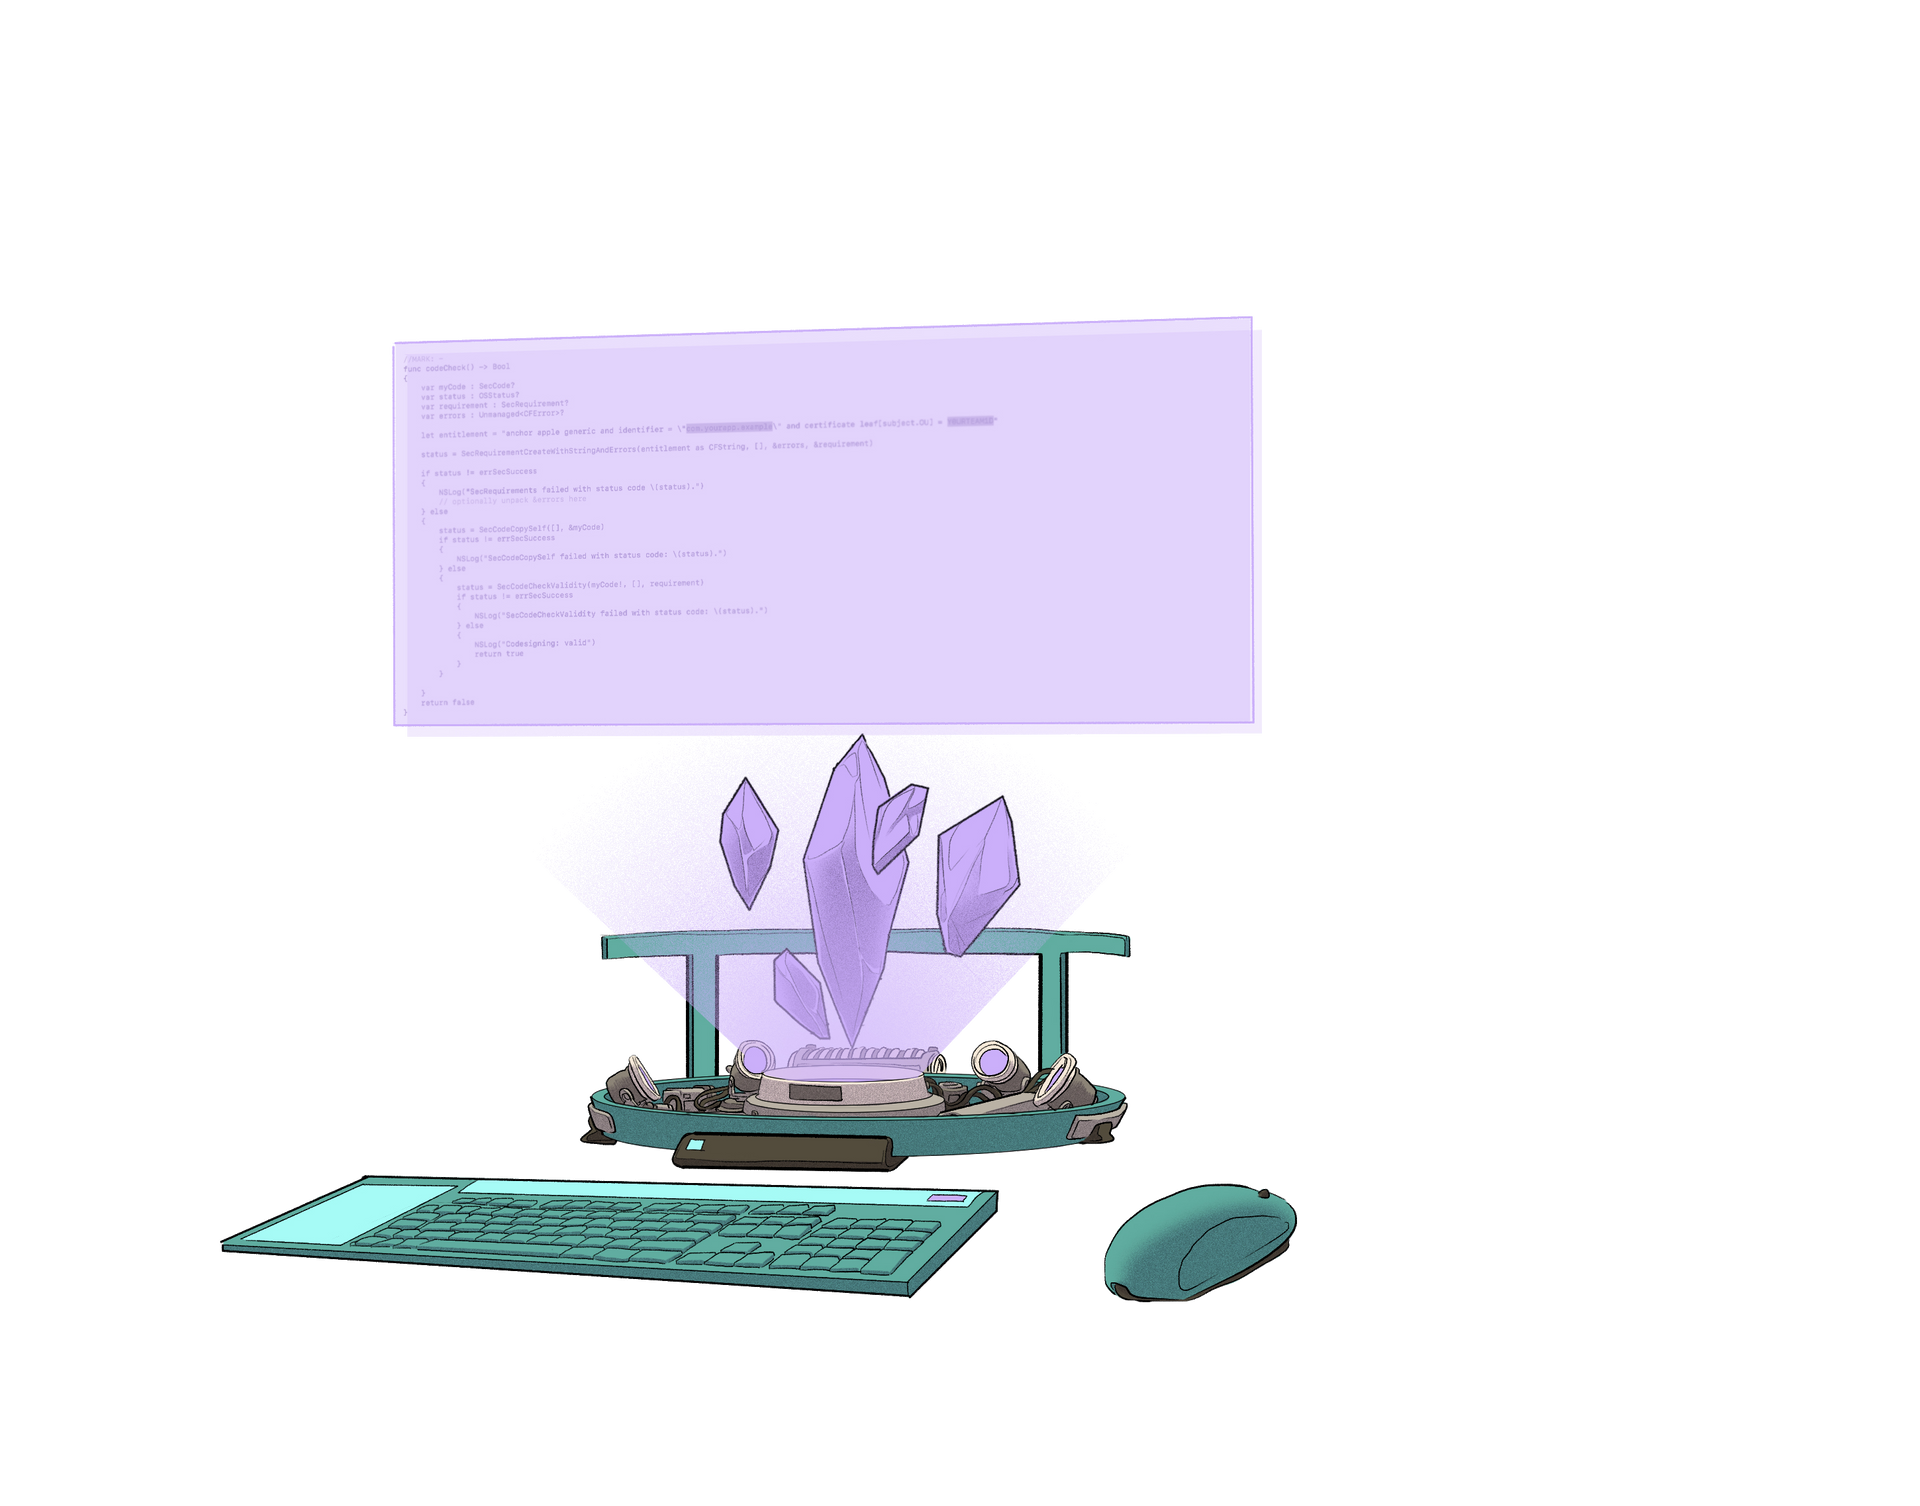 Imagem de uma configuração de computador futurista, alimentada por cristais de Ethereum.